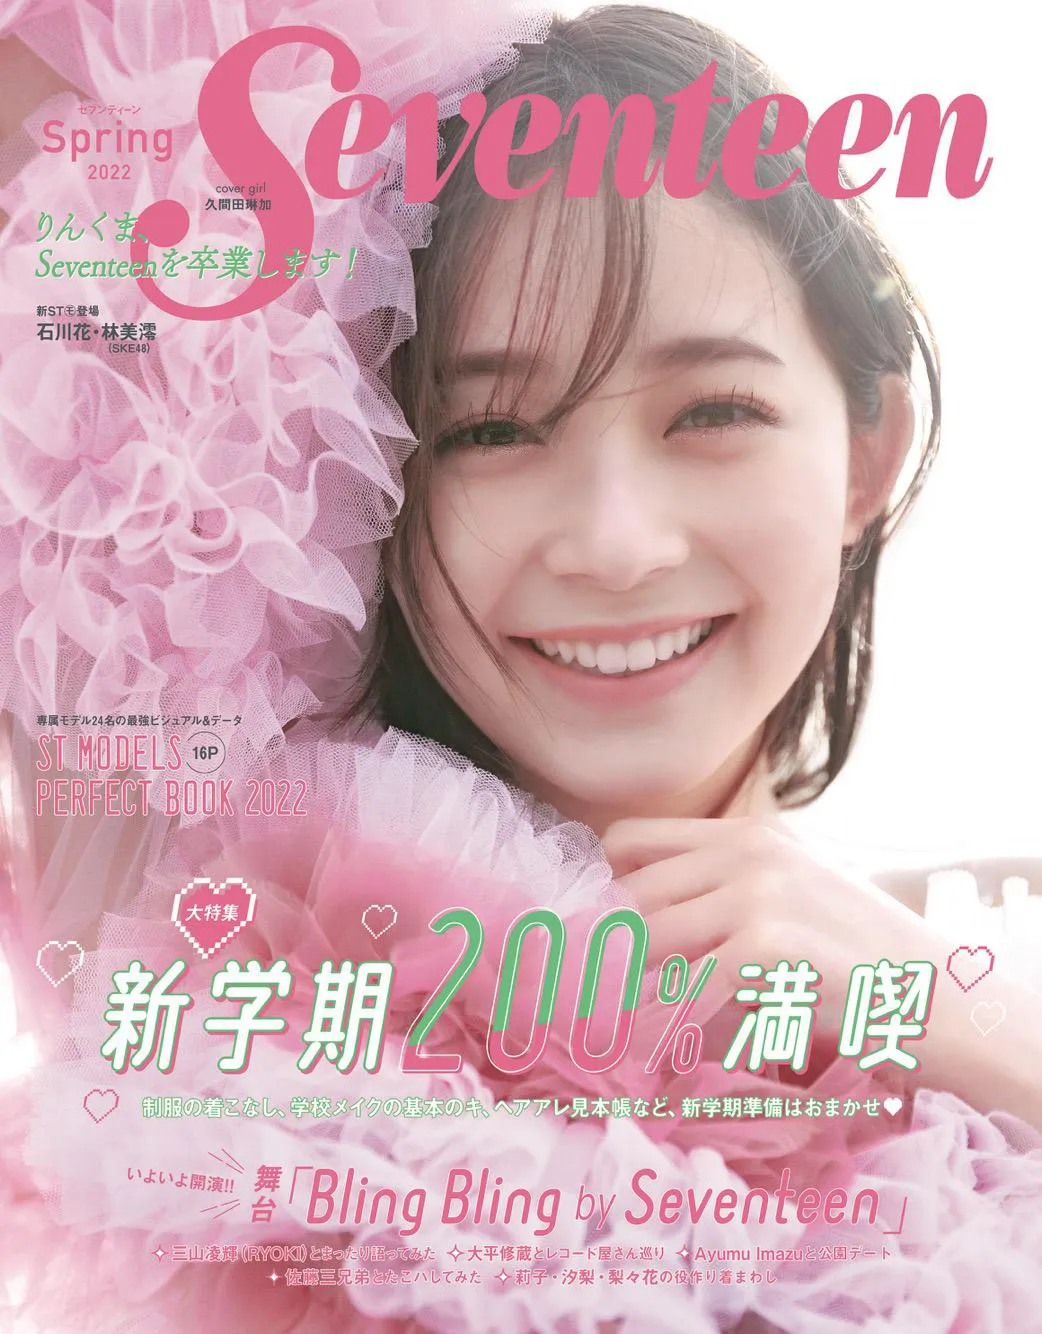 久間田琳加がカバーを務める「Seventeen春号」の表紙が解禁された